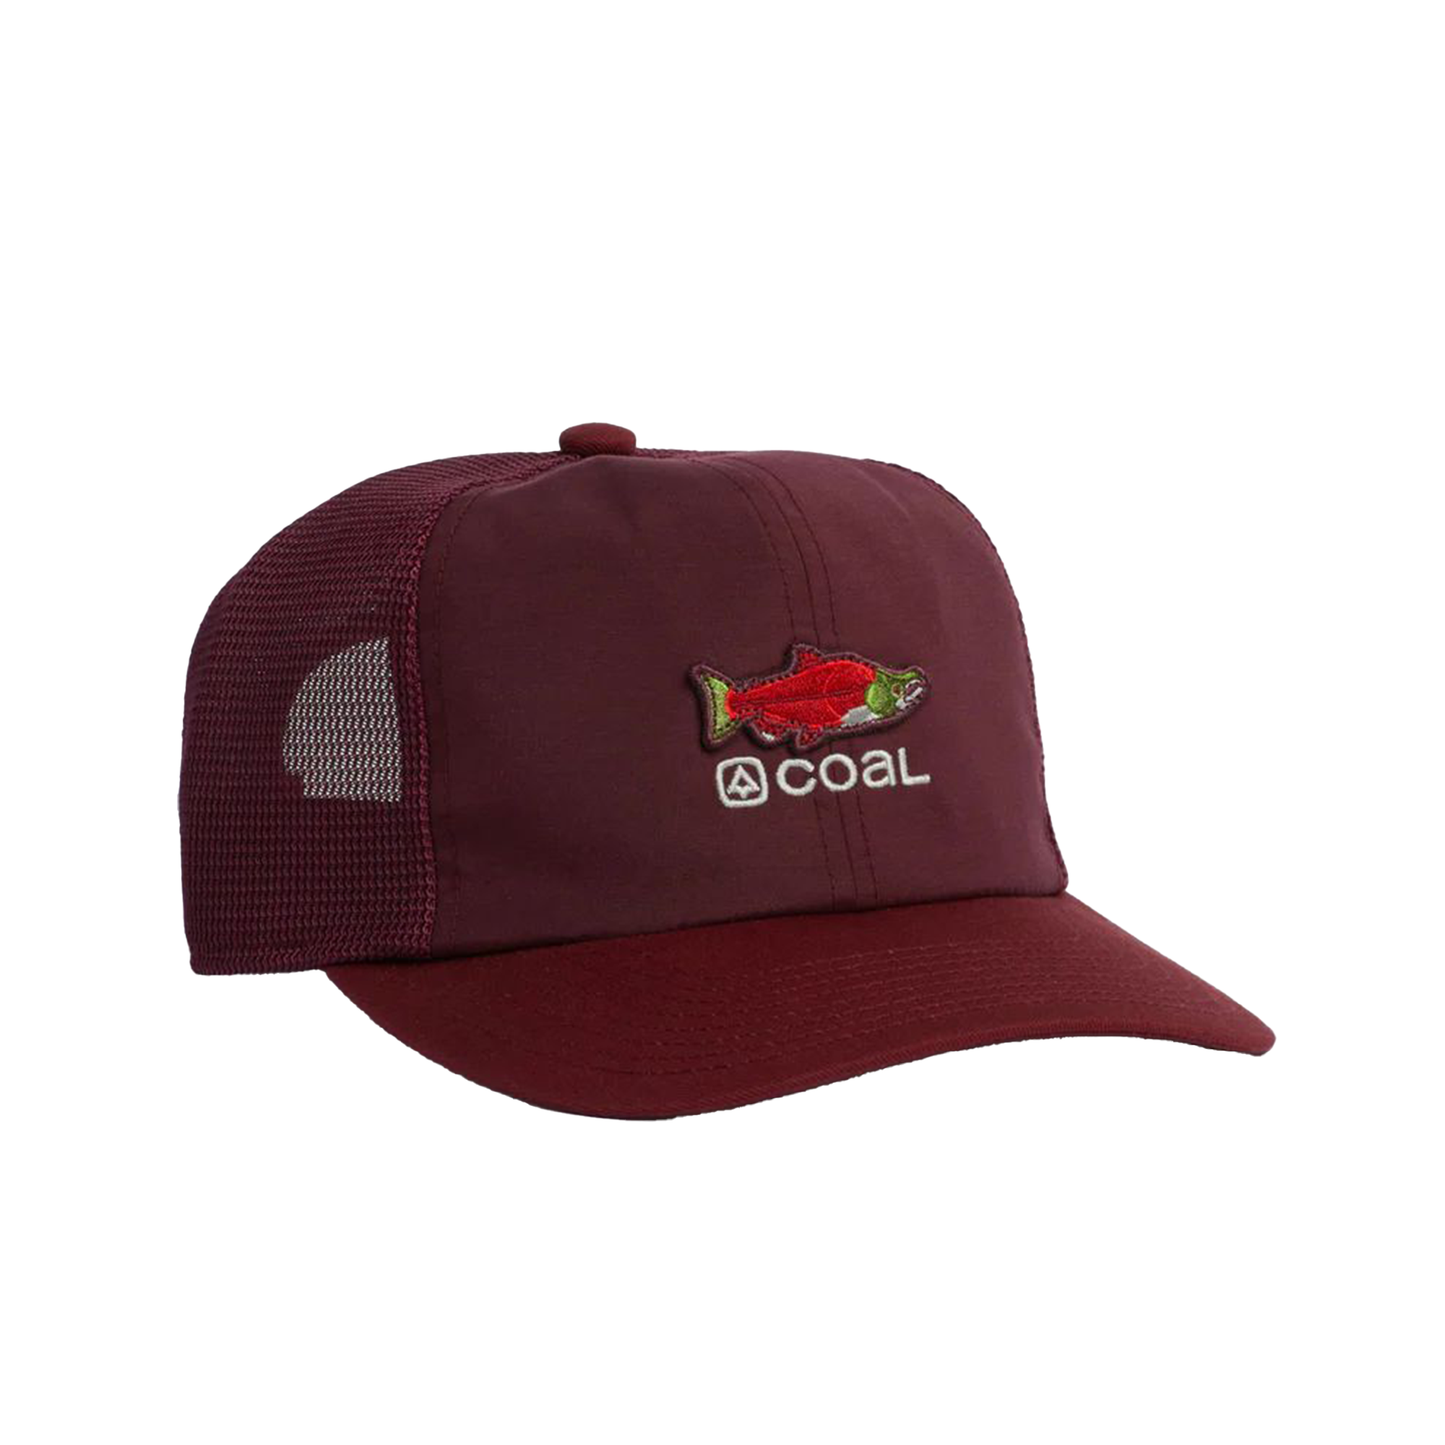 Coal Zephyr Hat Dark Red OS Hats